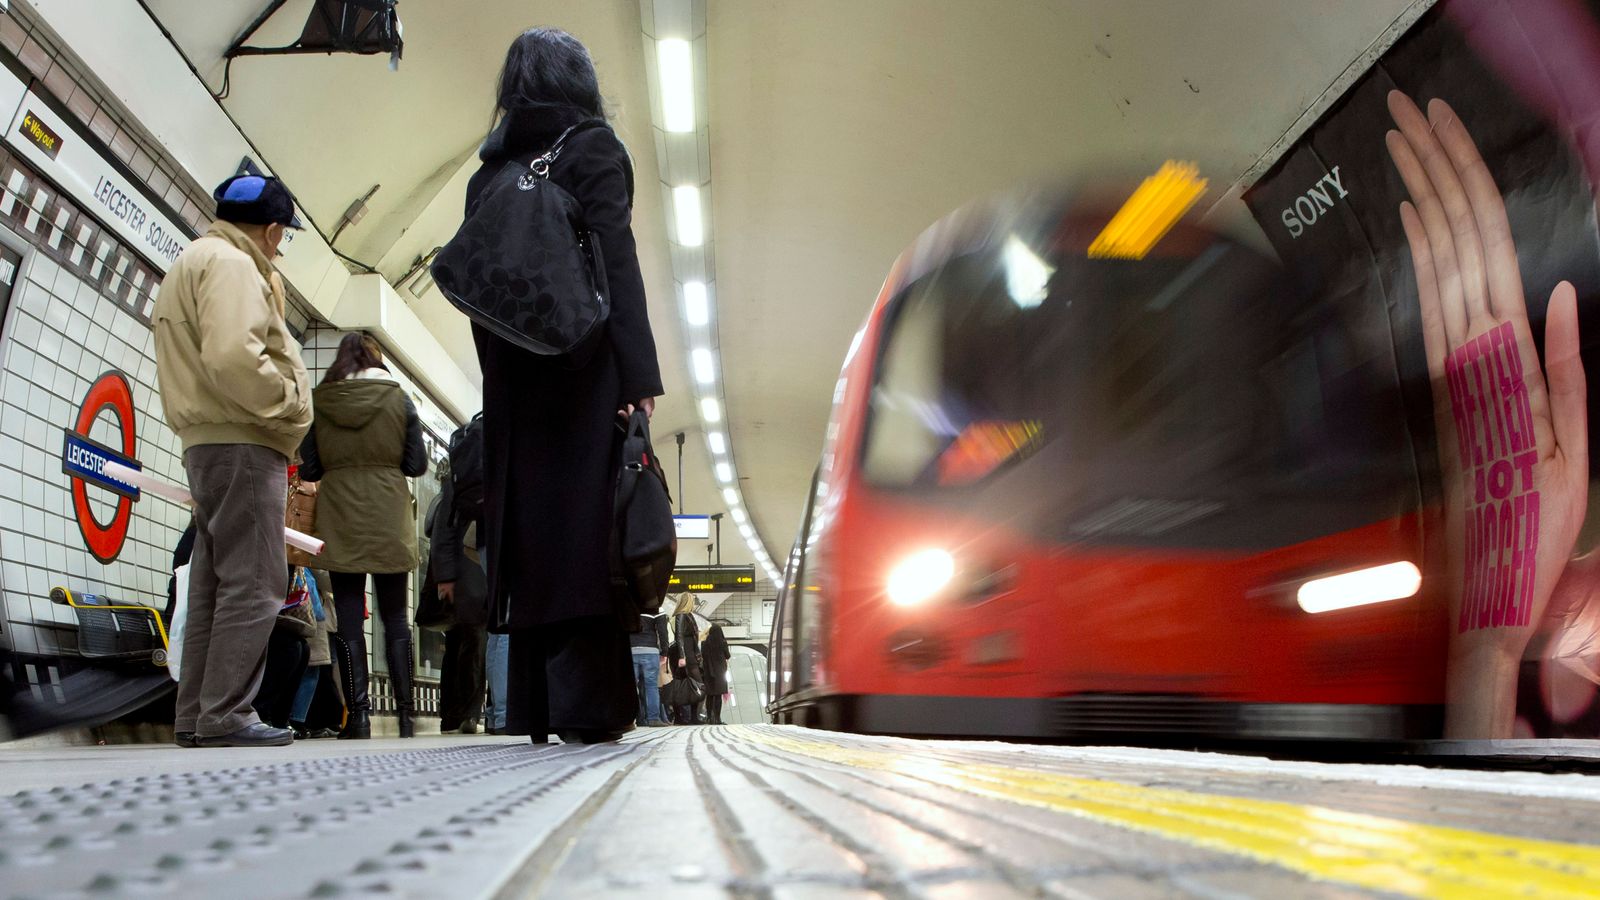 Grèves du métro suspendues : RMT annule une action revendicative dans le métro de Londres après des négociations « positives » avec TfL |  Nouvelles du Royaume-Uni